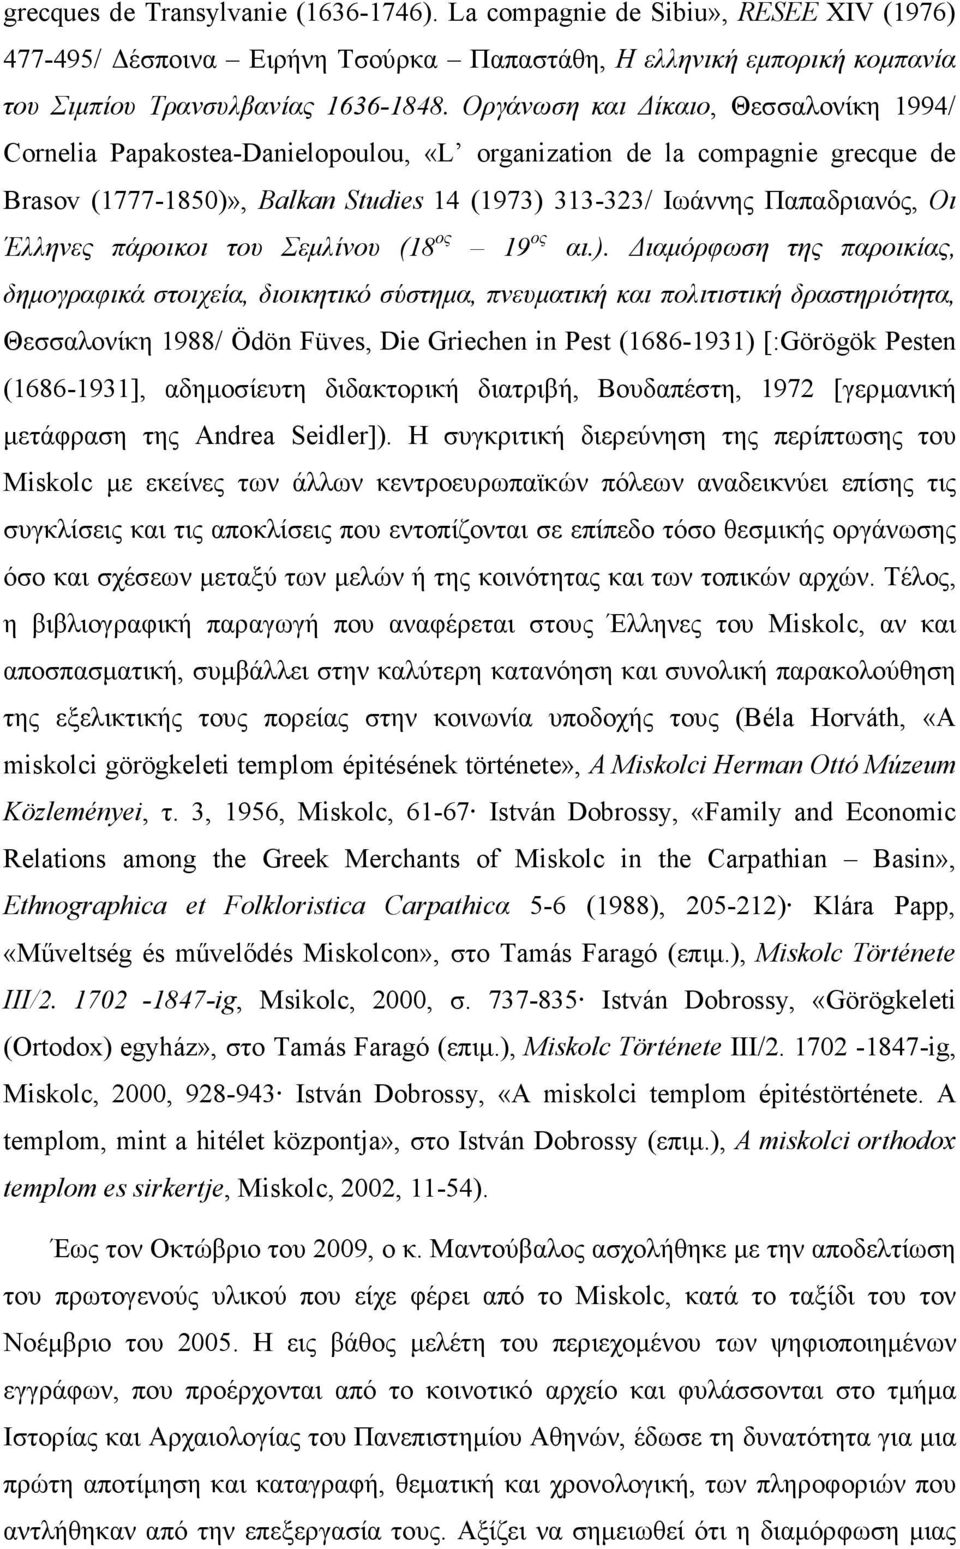 Έλληνες πάροικοι του Σεµλίνου (18 ος 19 ος αι.).